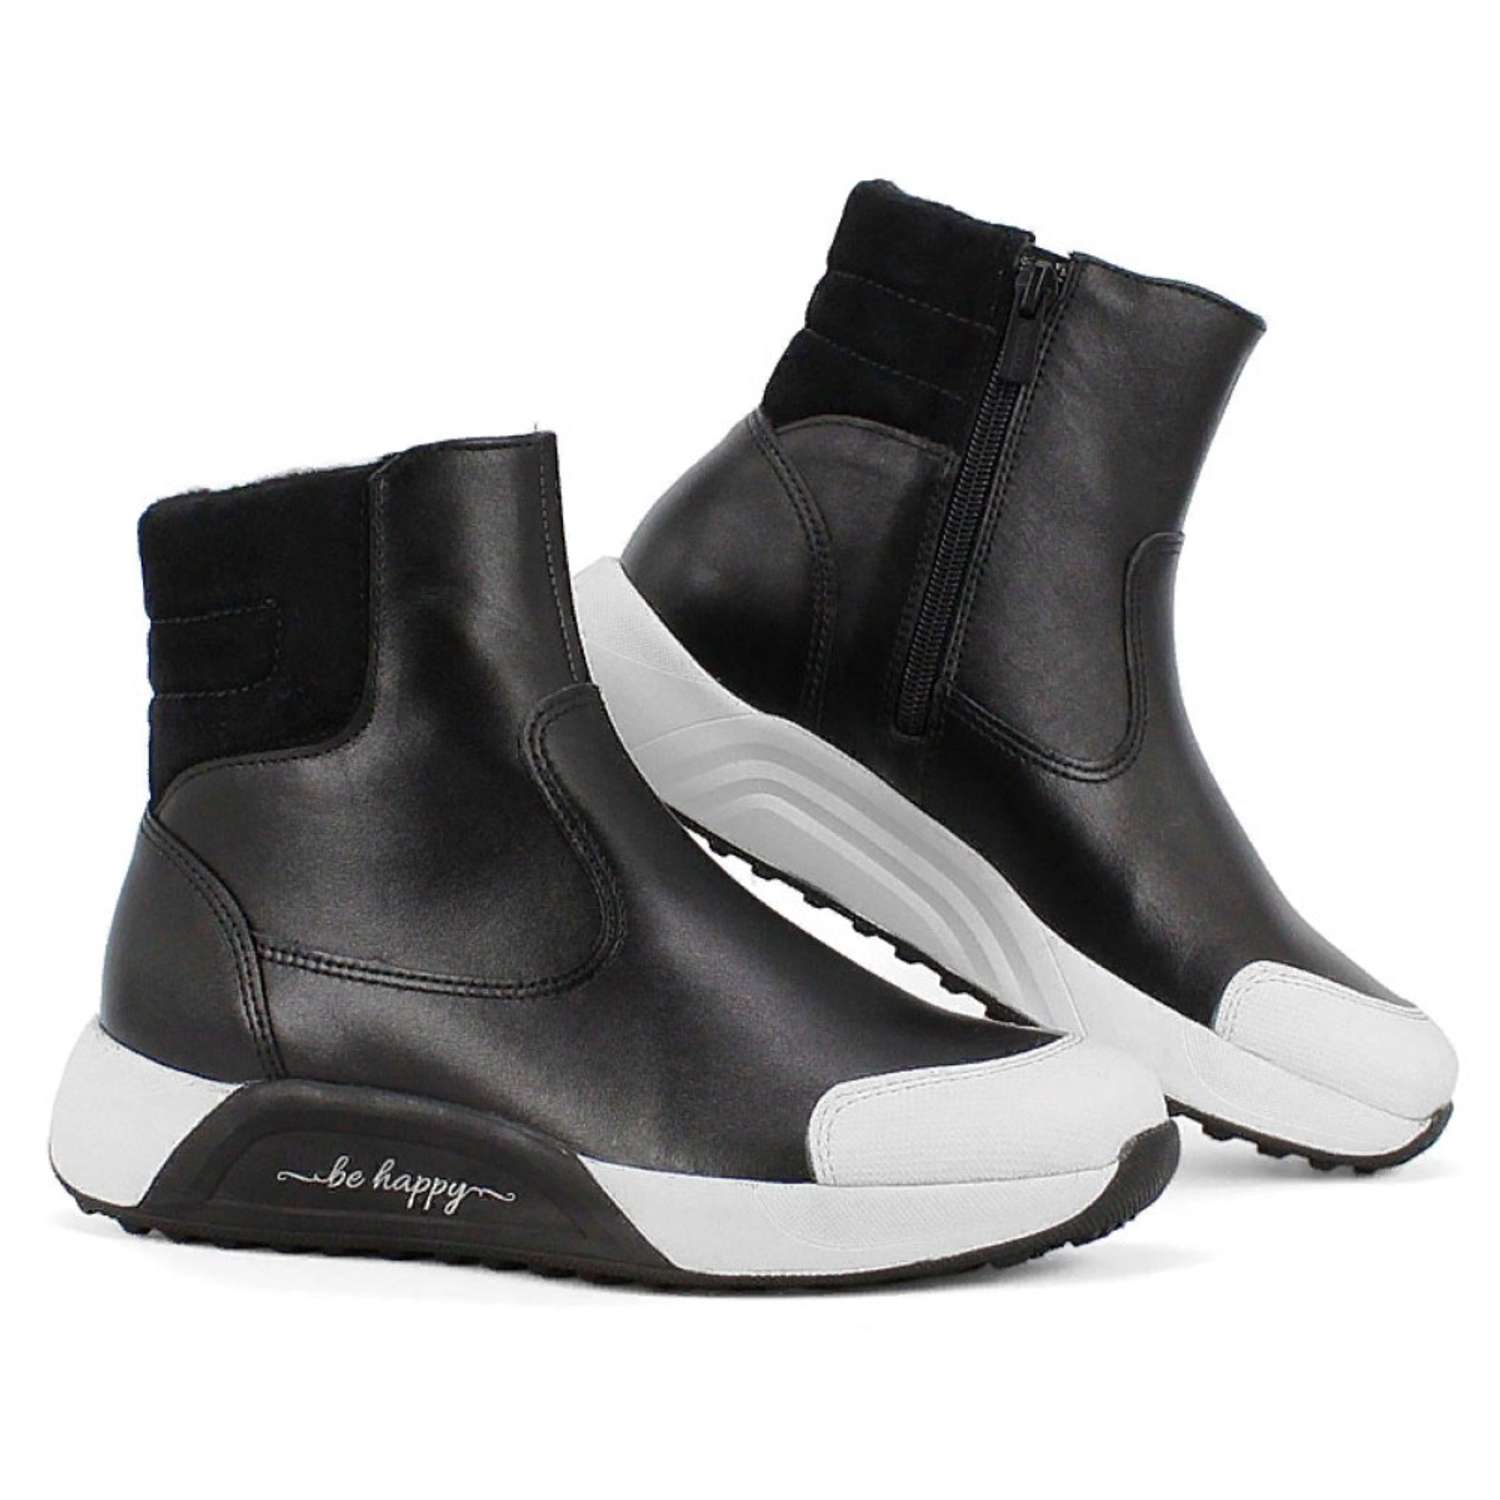 Ботинки ЛЕЛЬ м 4-2093 Ботинки школьные (черный) - фото 1